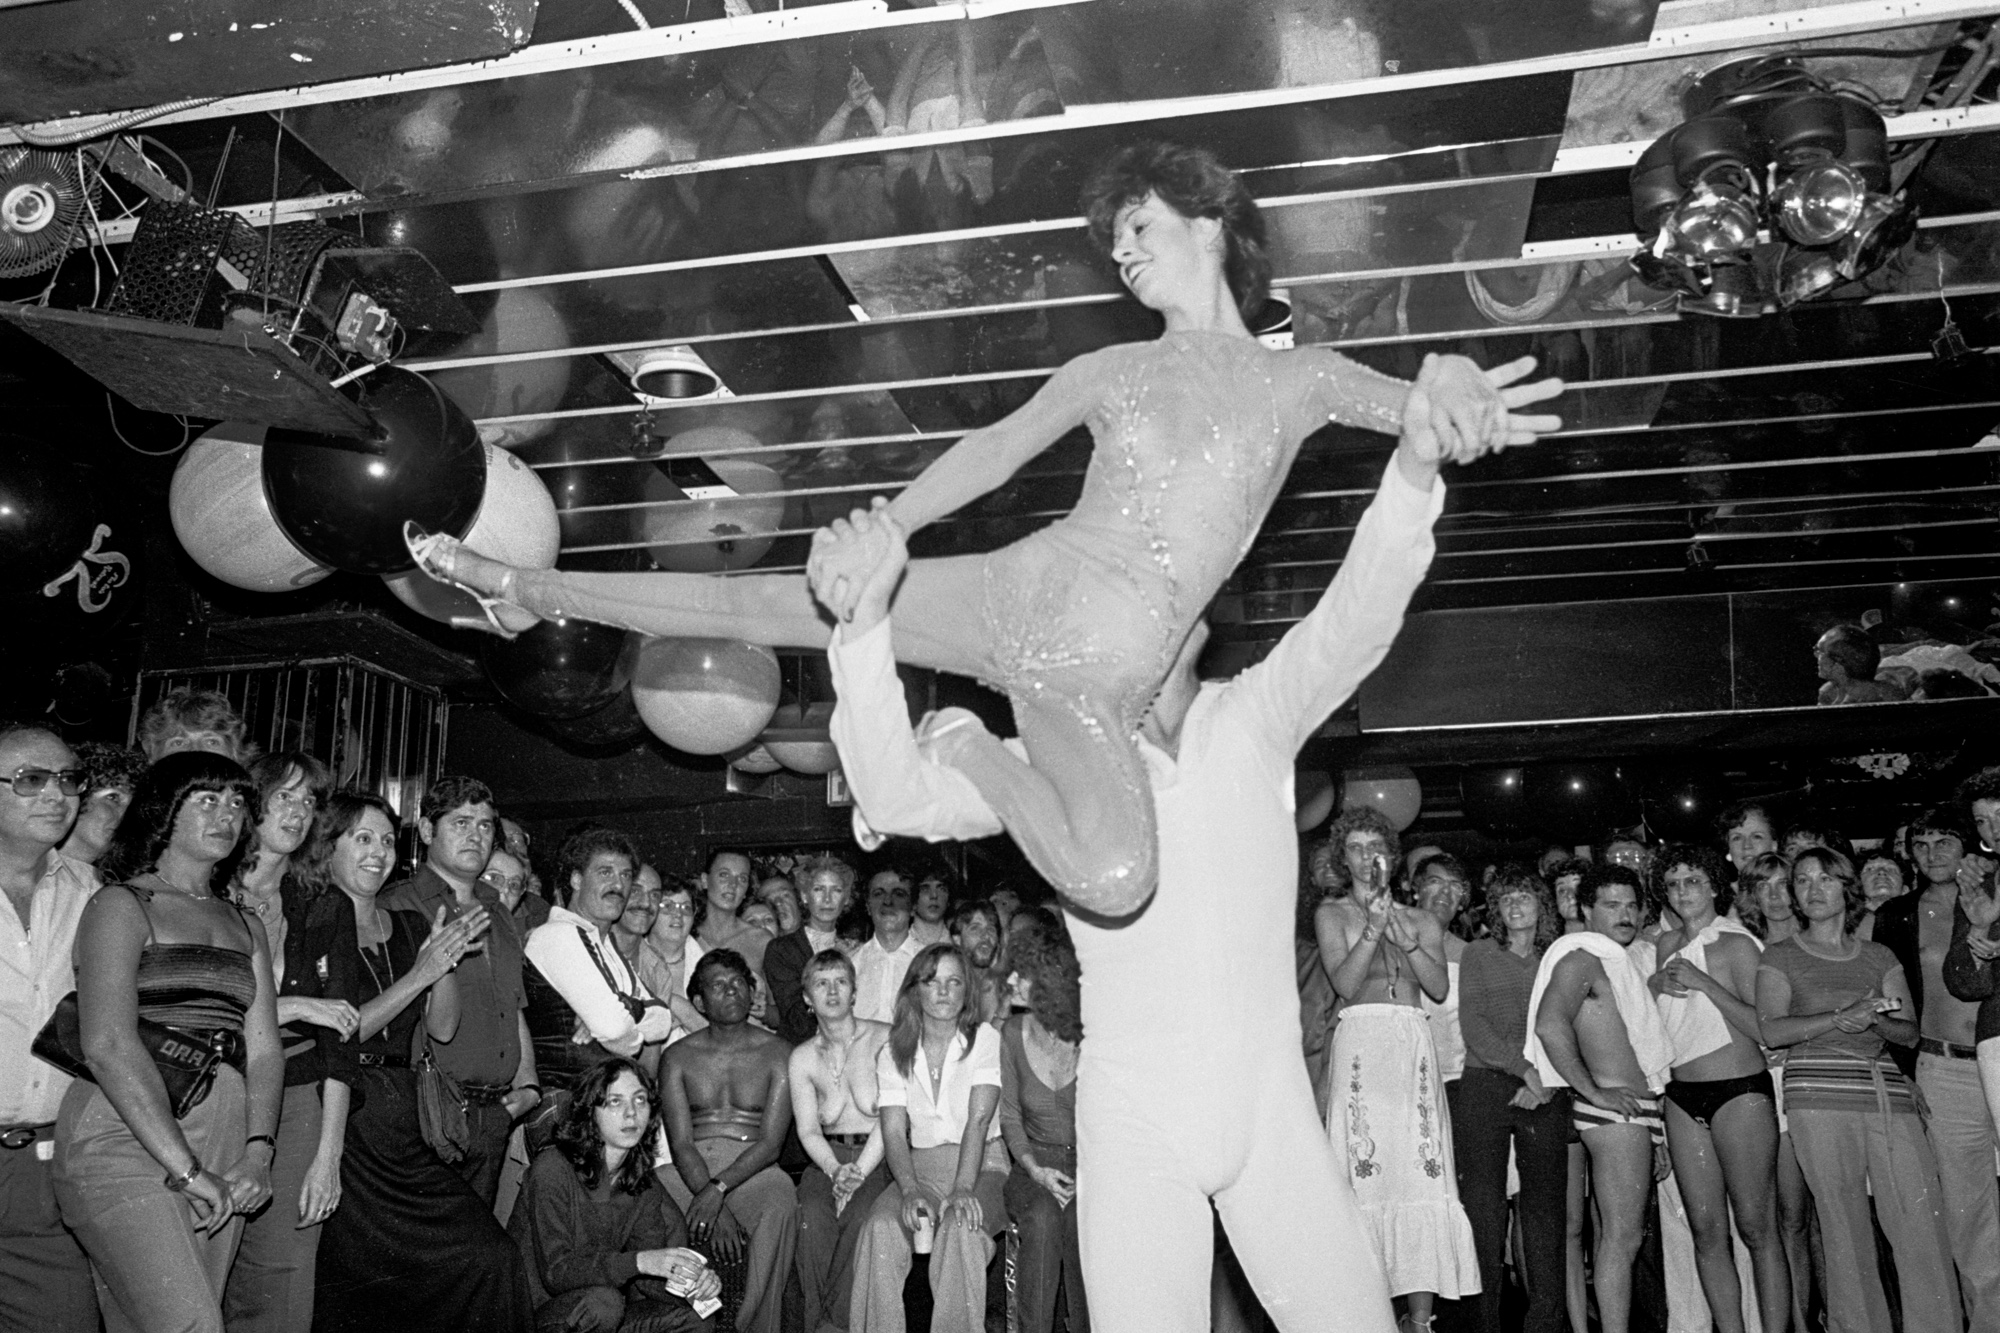 A wild ride through a 70s New York sex club pic